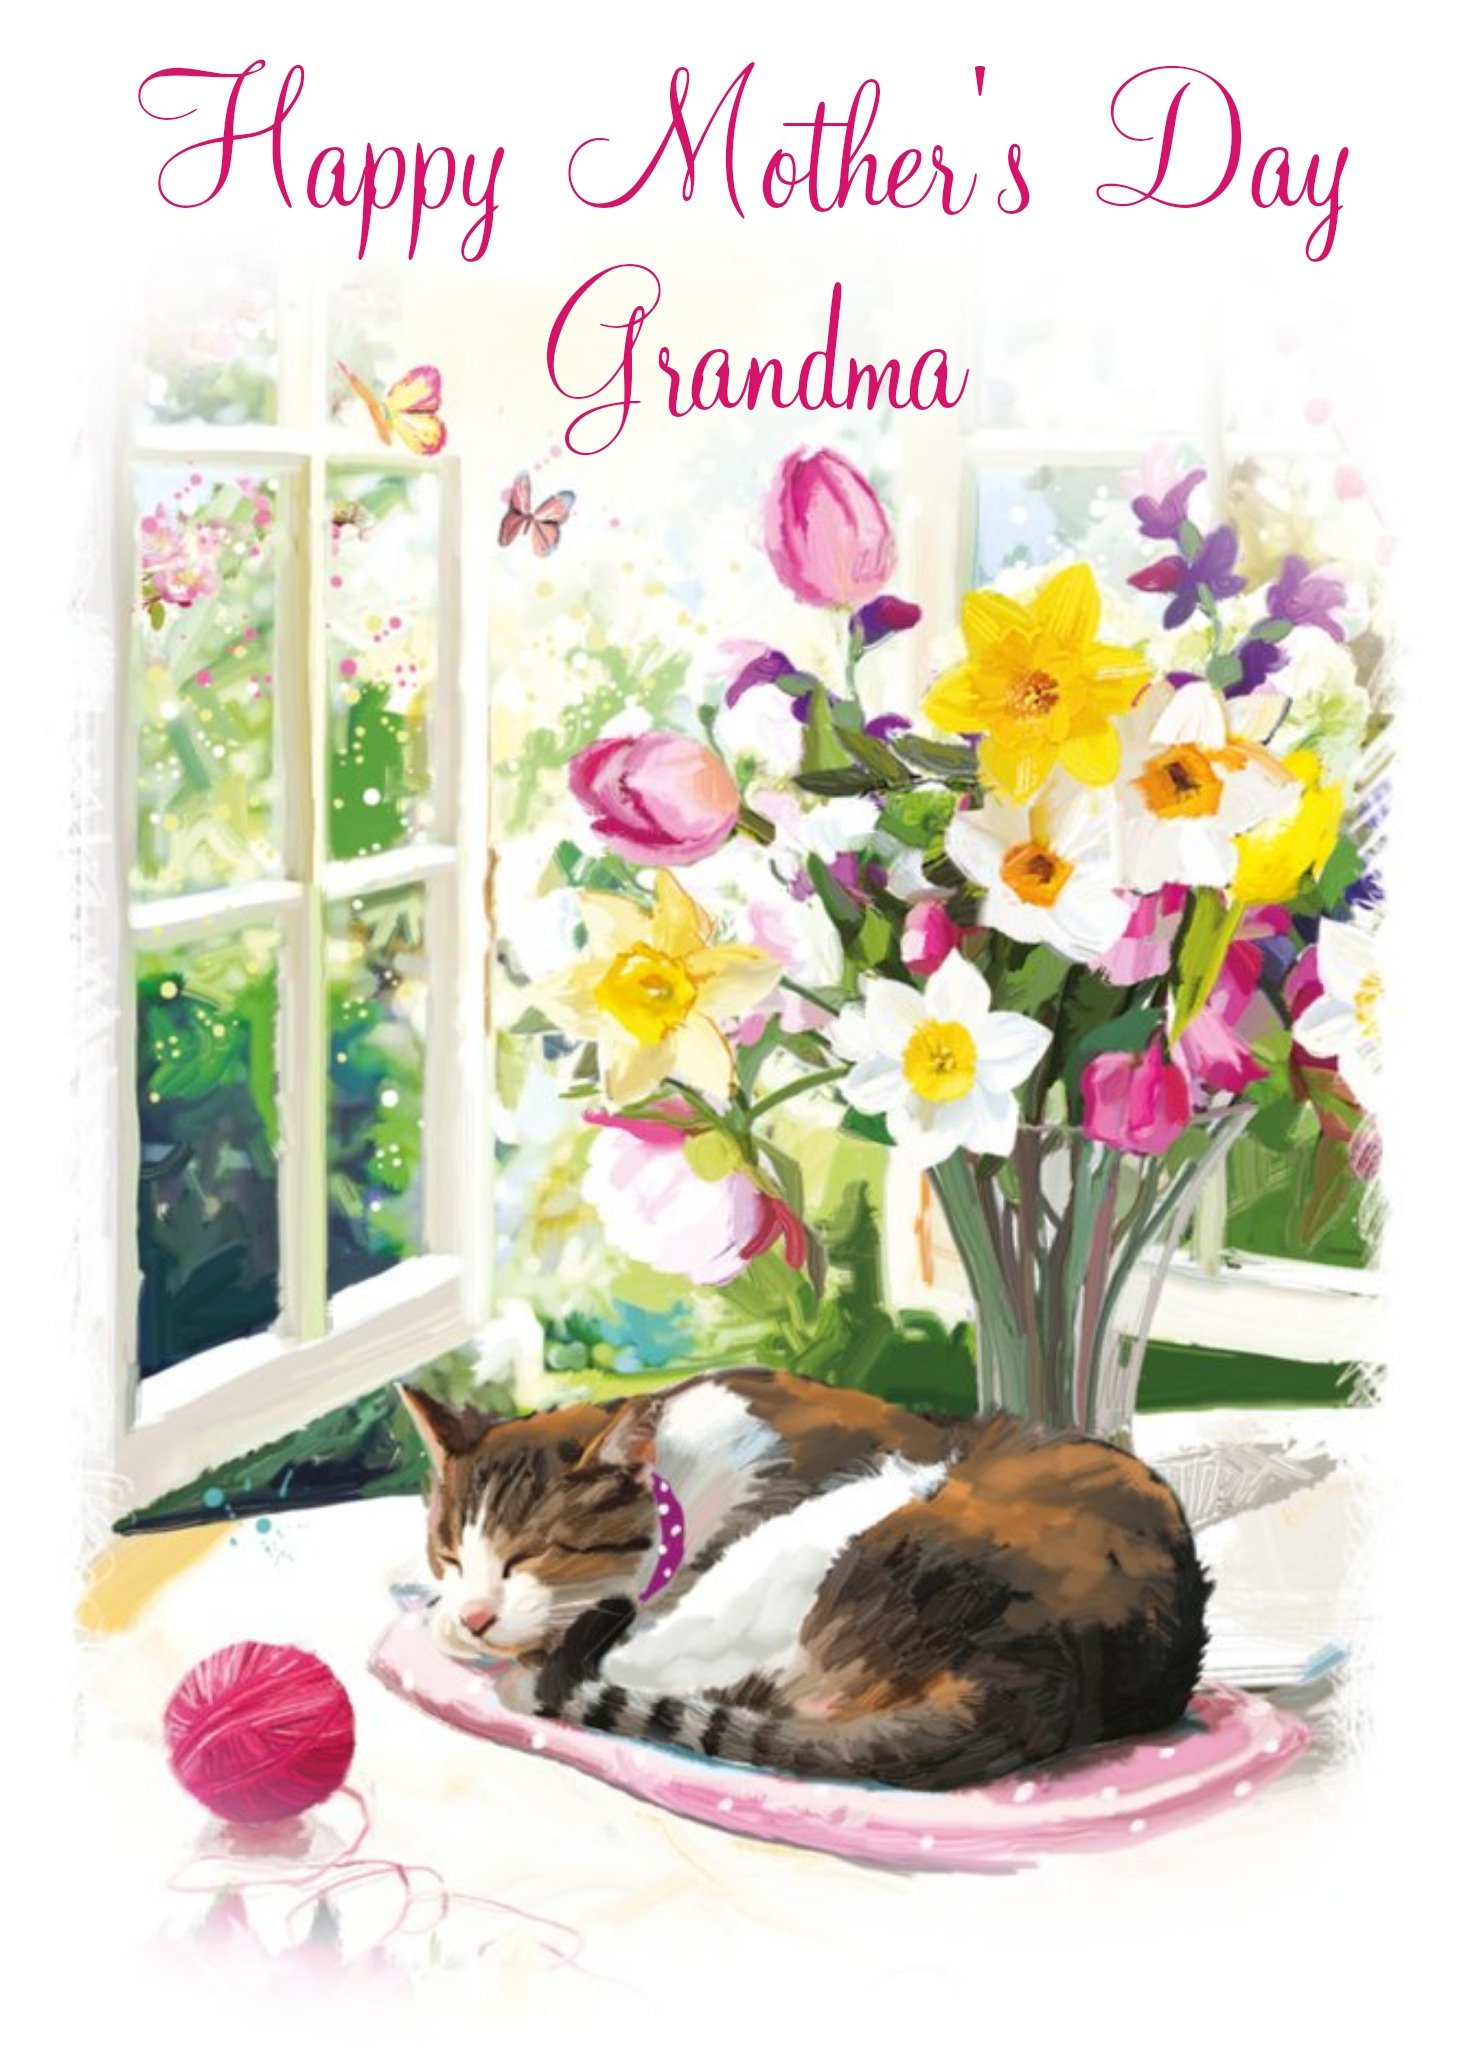 Ling Design Mother's Day Card - Grandma - Cat Ecard